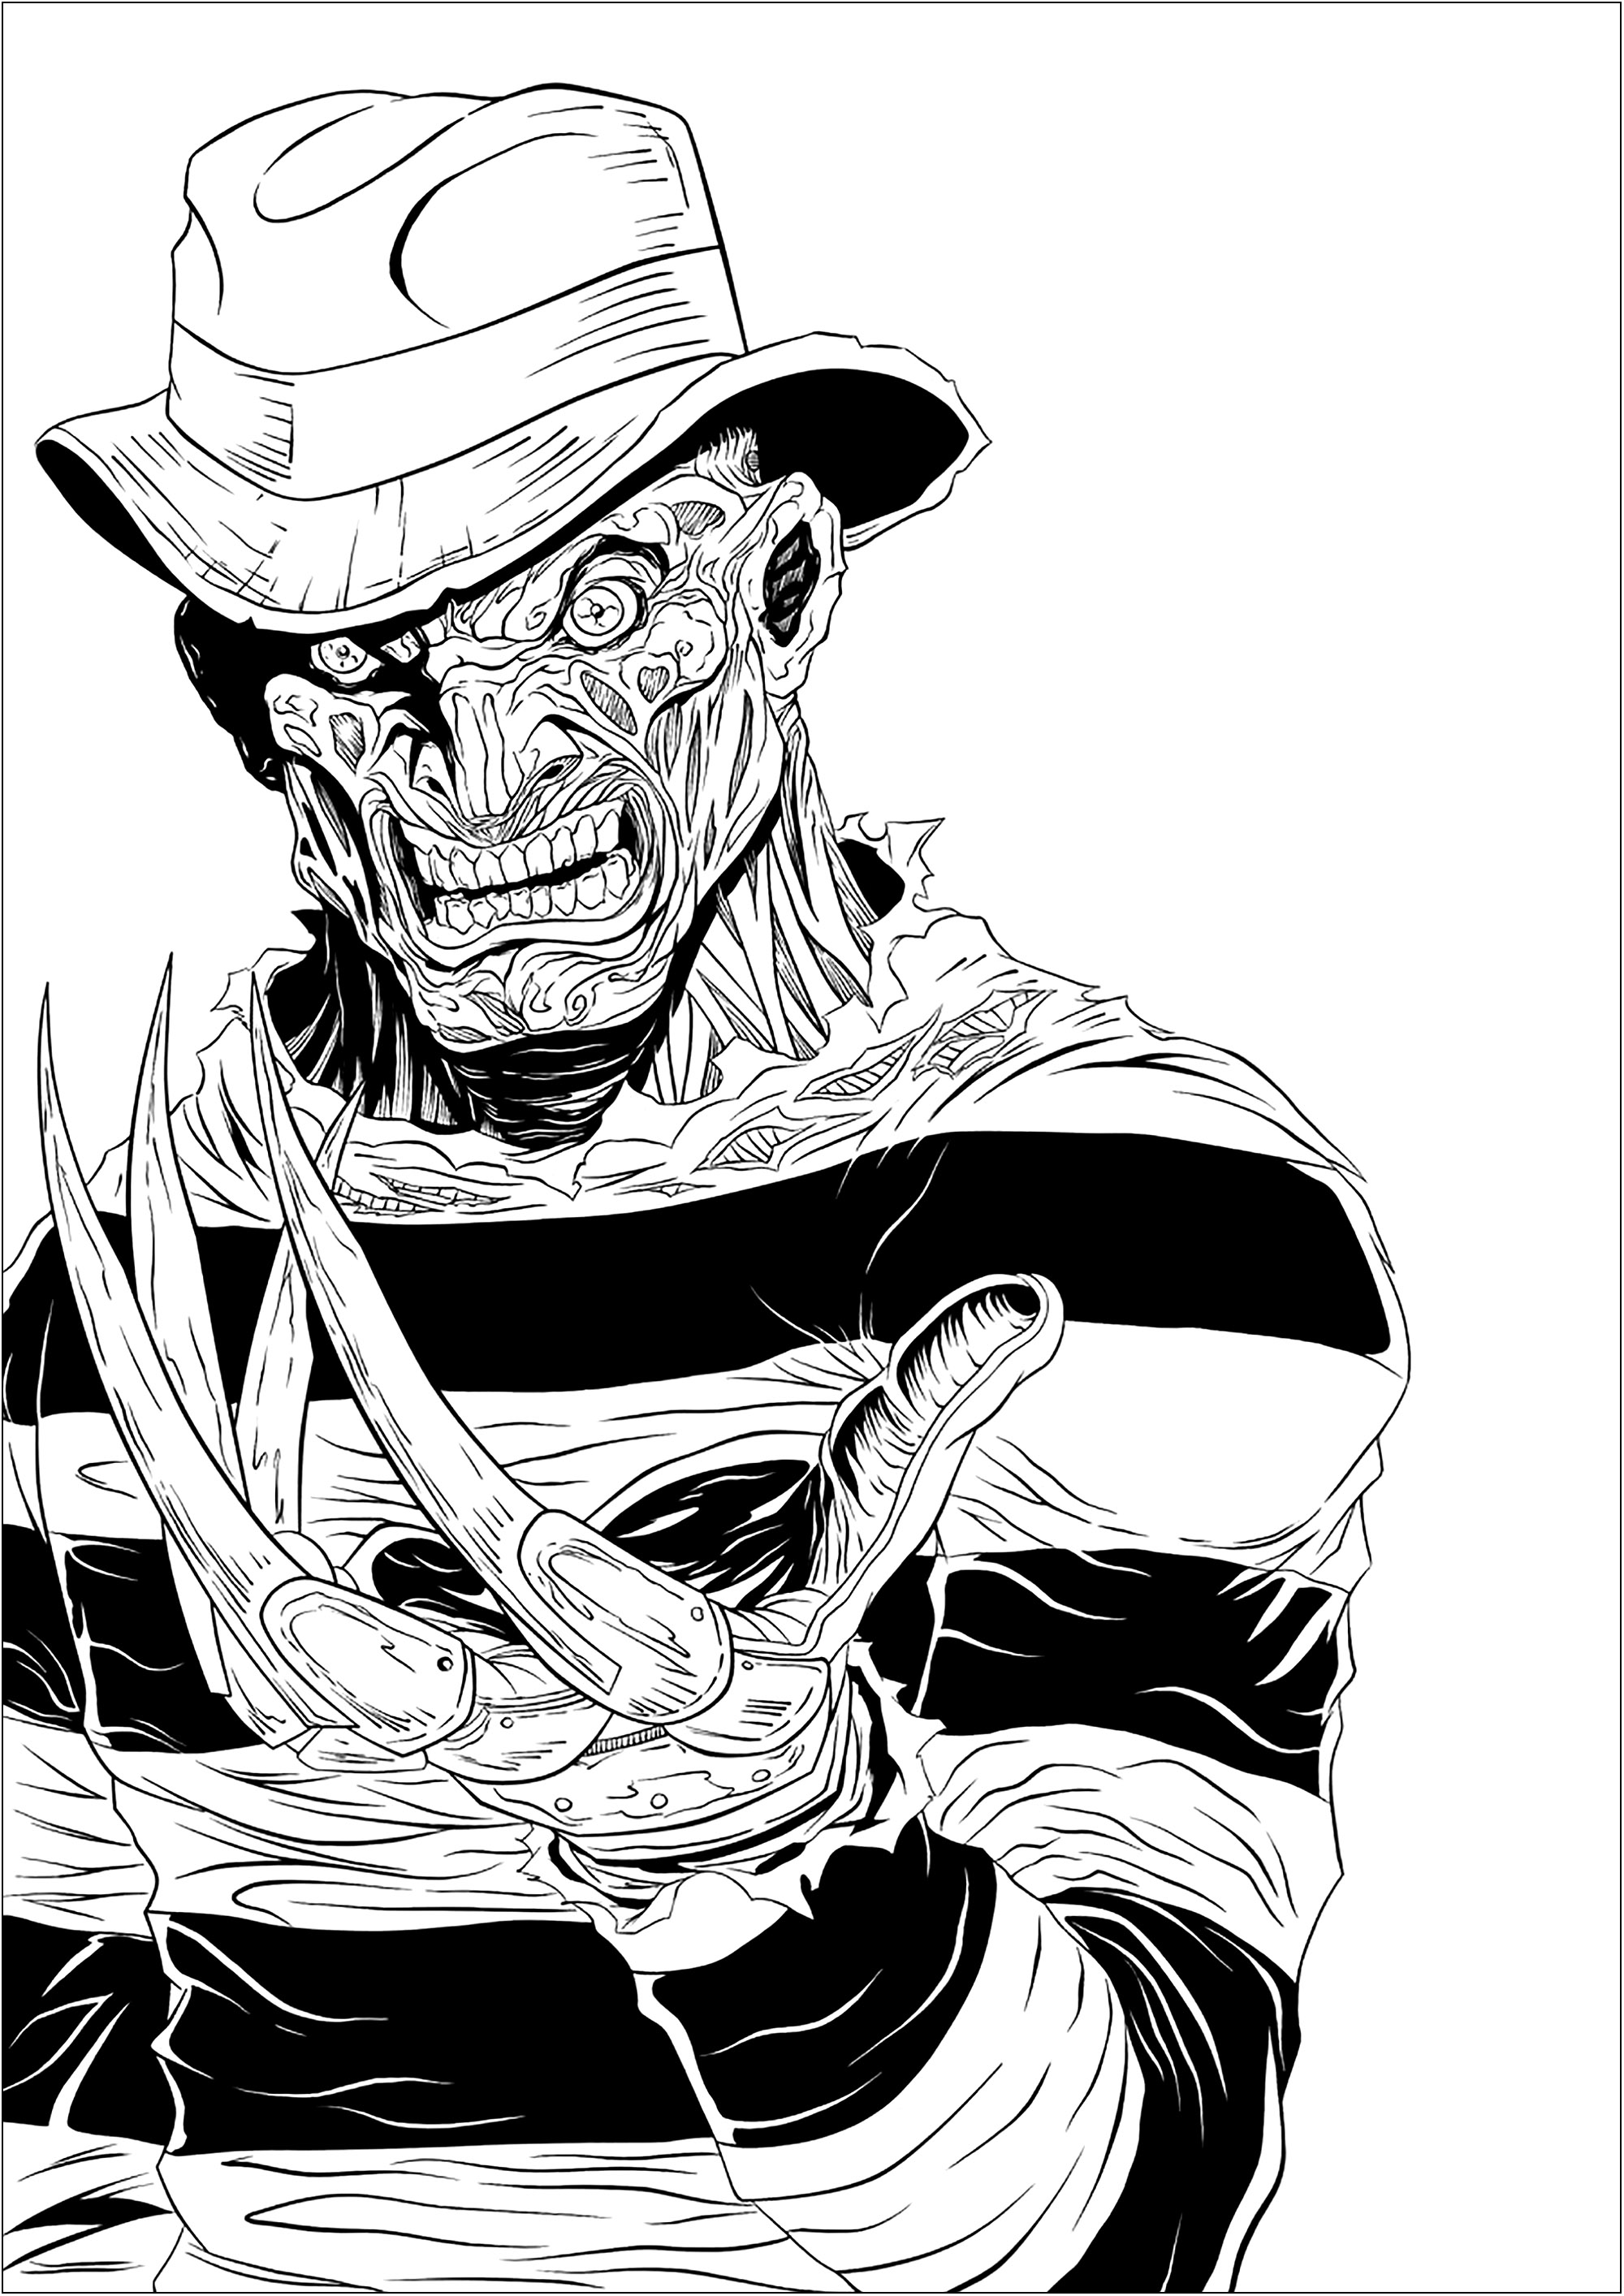 El terrorífico Freddy Krueger y sus afiladas garras, Artista : Digital Inkz